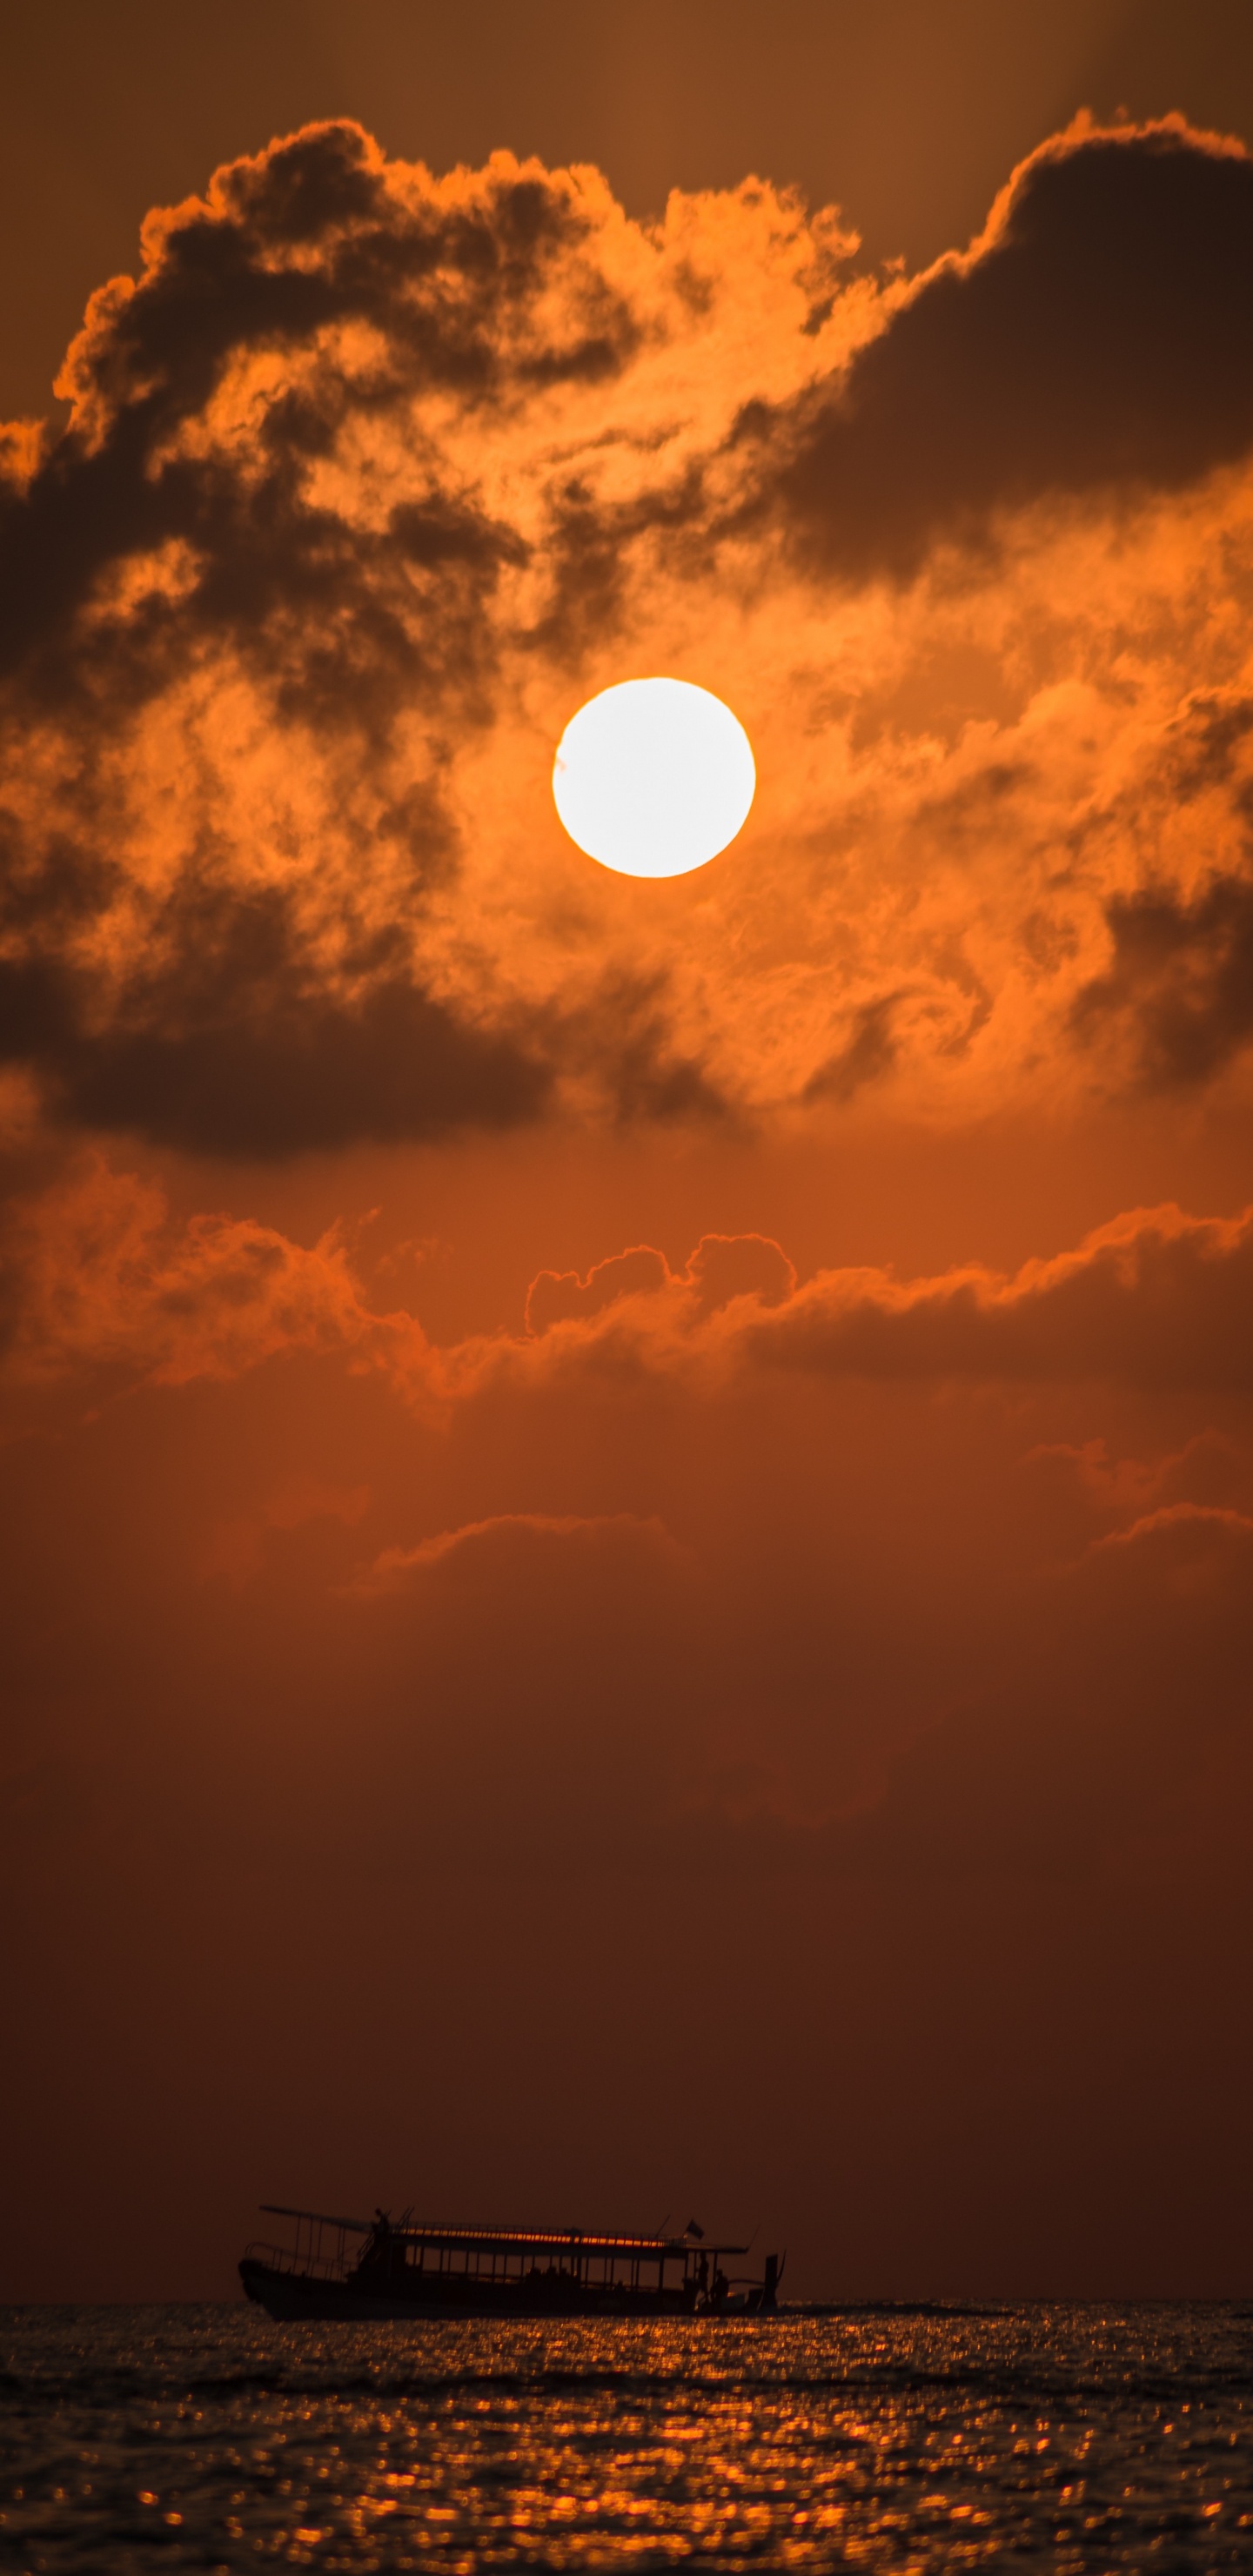 Afterglow, Soleil, Orange, Crépuscule, Jour. Wallpaper in 1440x2960 Resolution